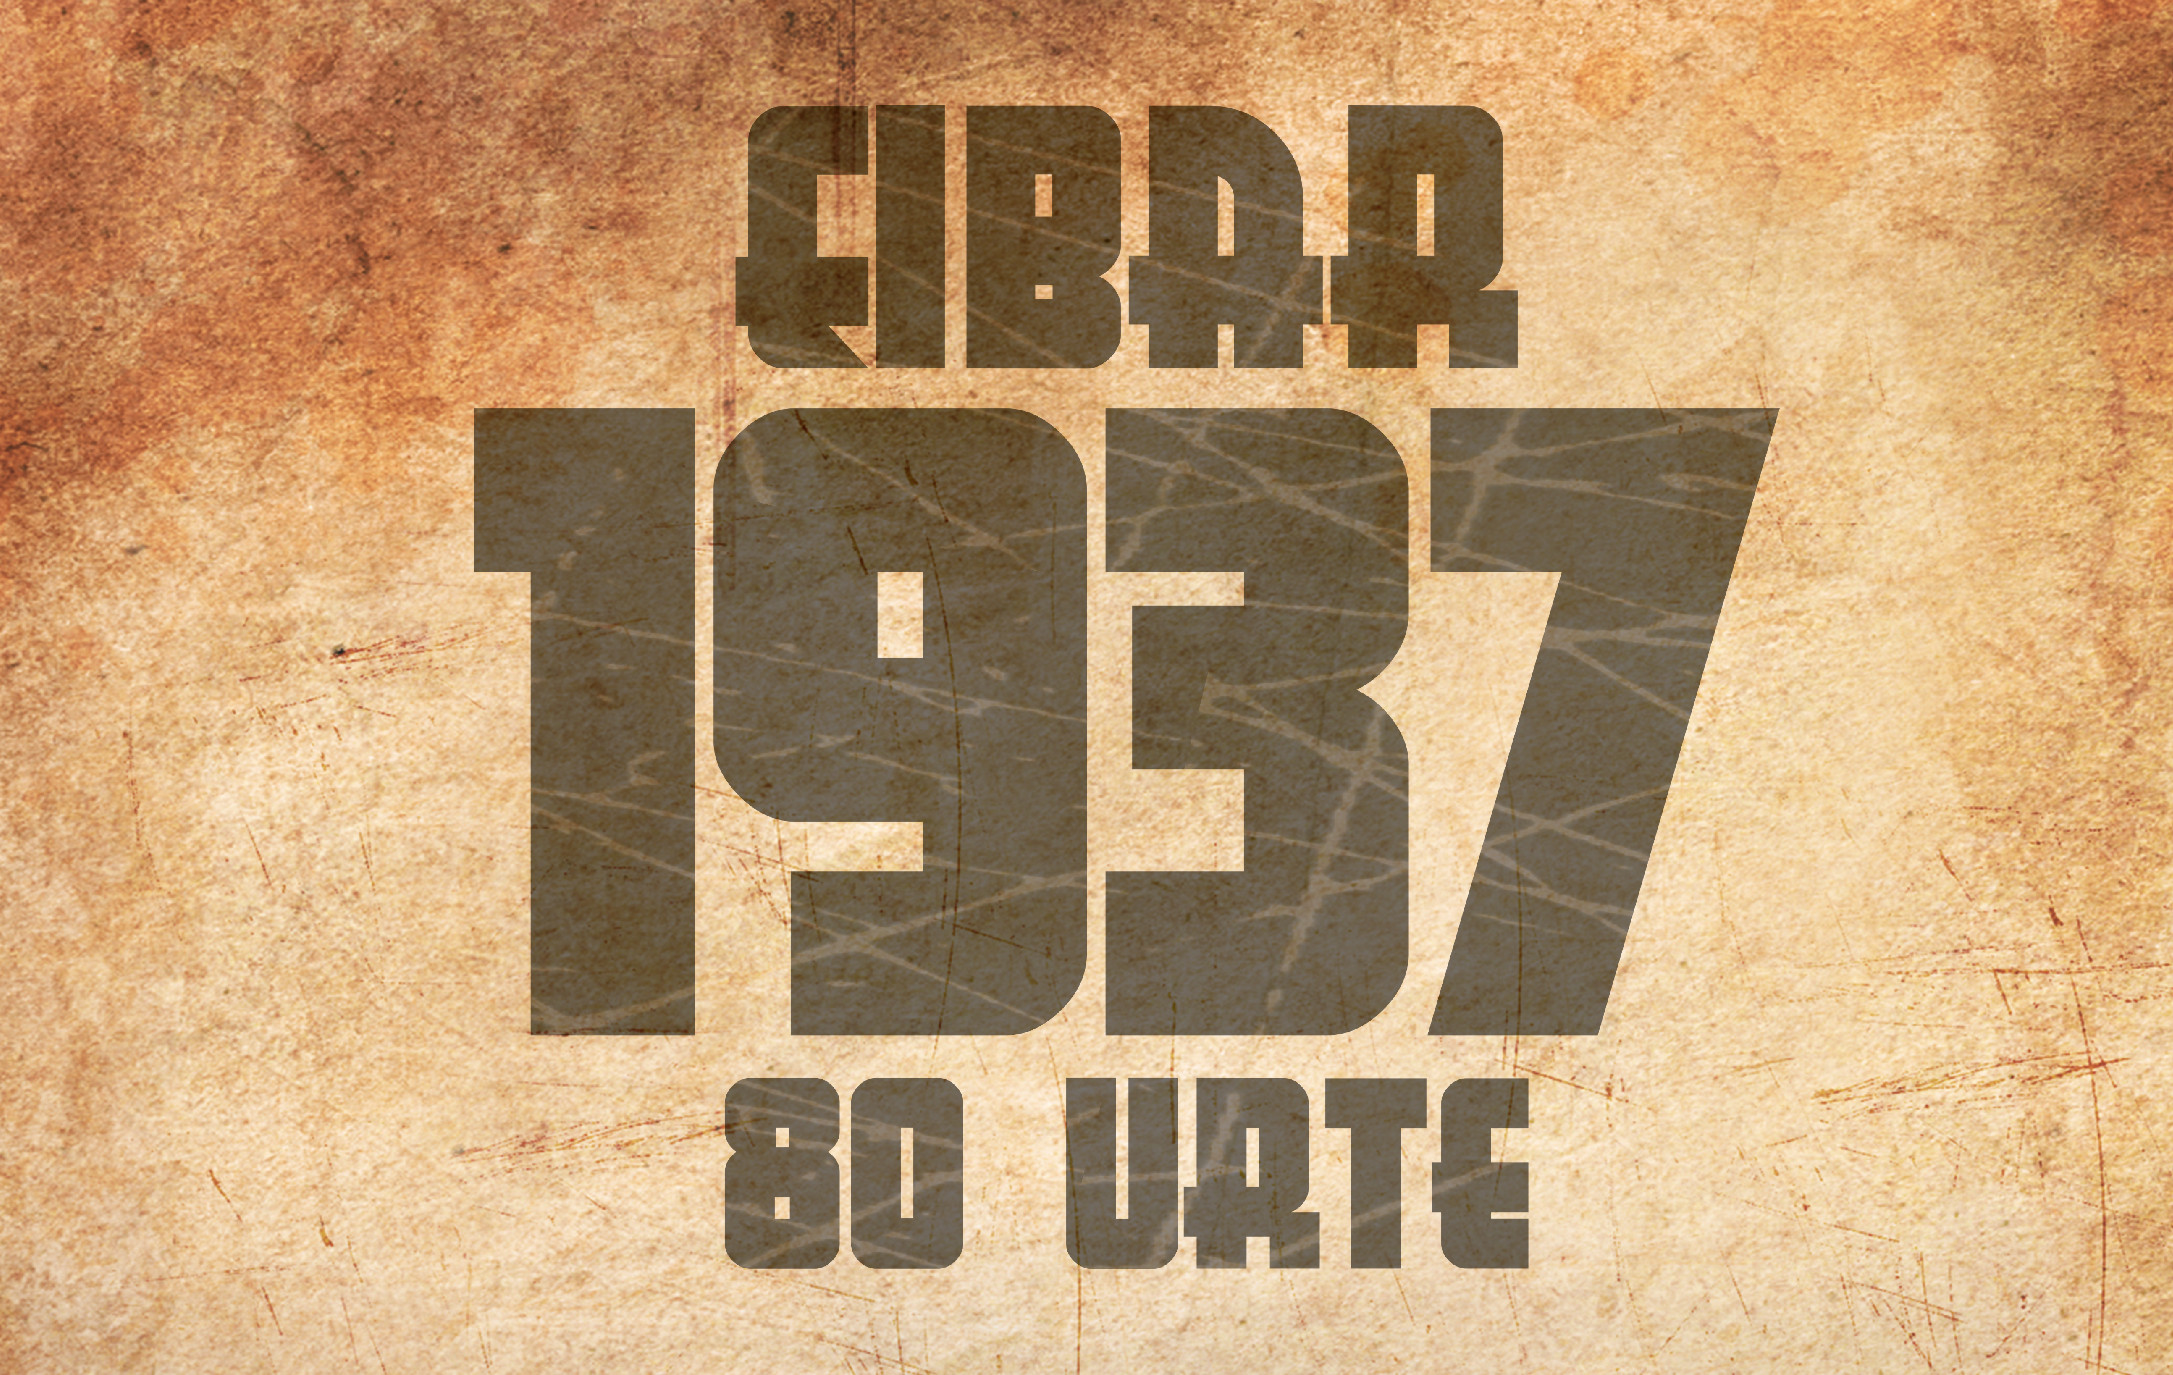 EIBAR 1937 . 80 URTE         